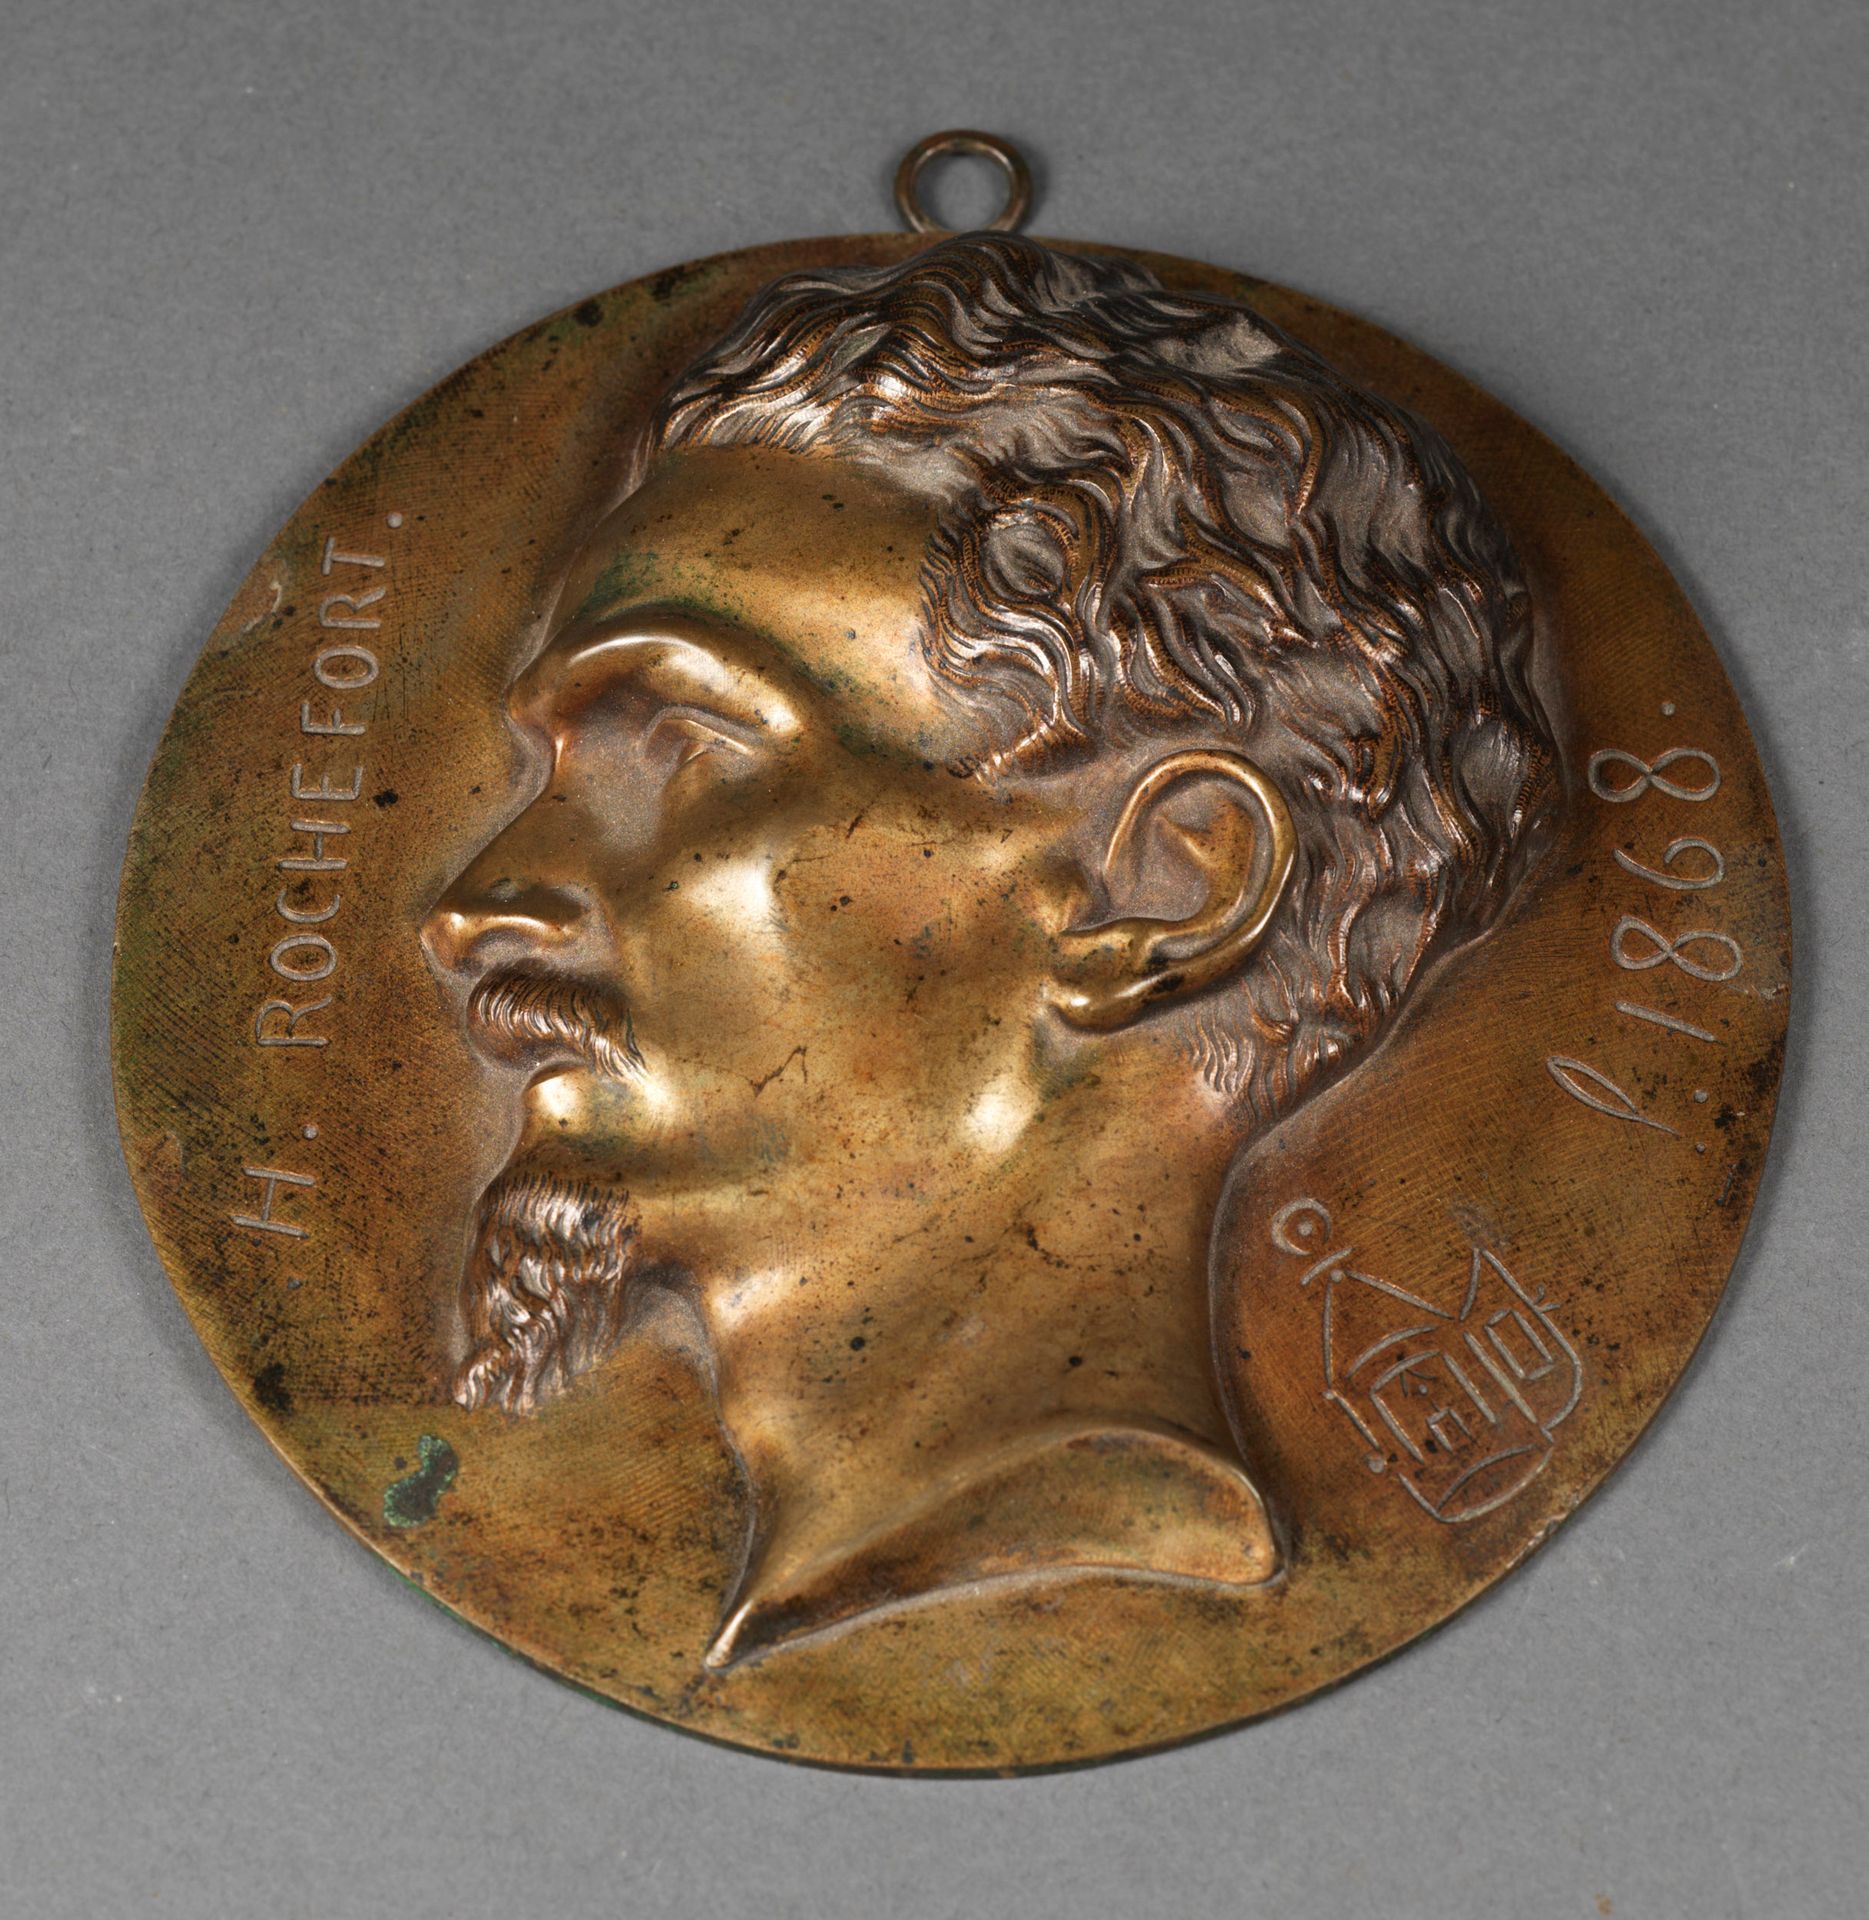 ECOLE FRANCAISE 19世纪法国学校 - 文学评论家亨利-罗什福尔的肖像 - 棕色铜锈的青铜 - 铸有标题和日期的1868年 - 16 x 15 x&hellip;